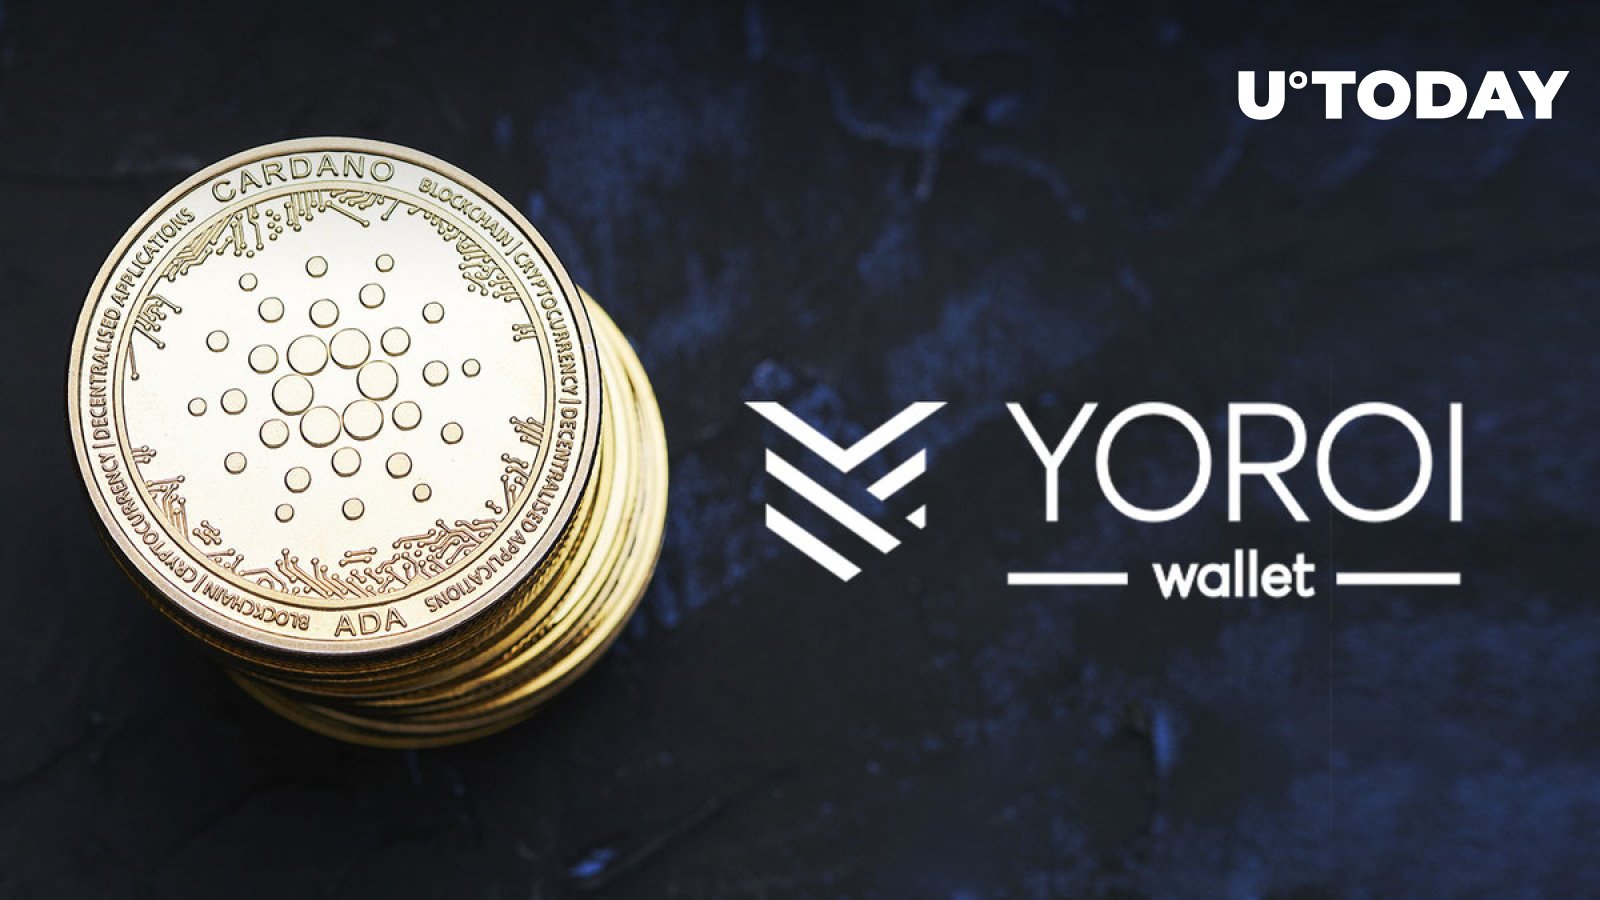 Cardano-Based Yoroi Wallet Sunset Support for Ergo Token: Details